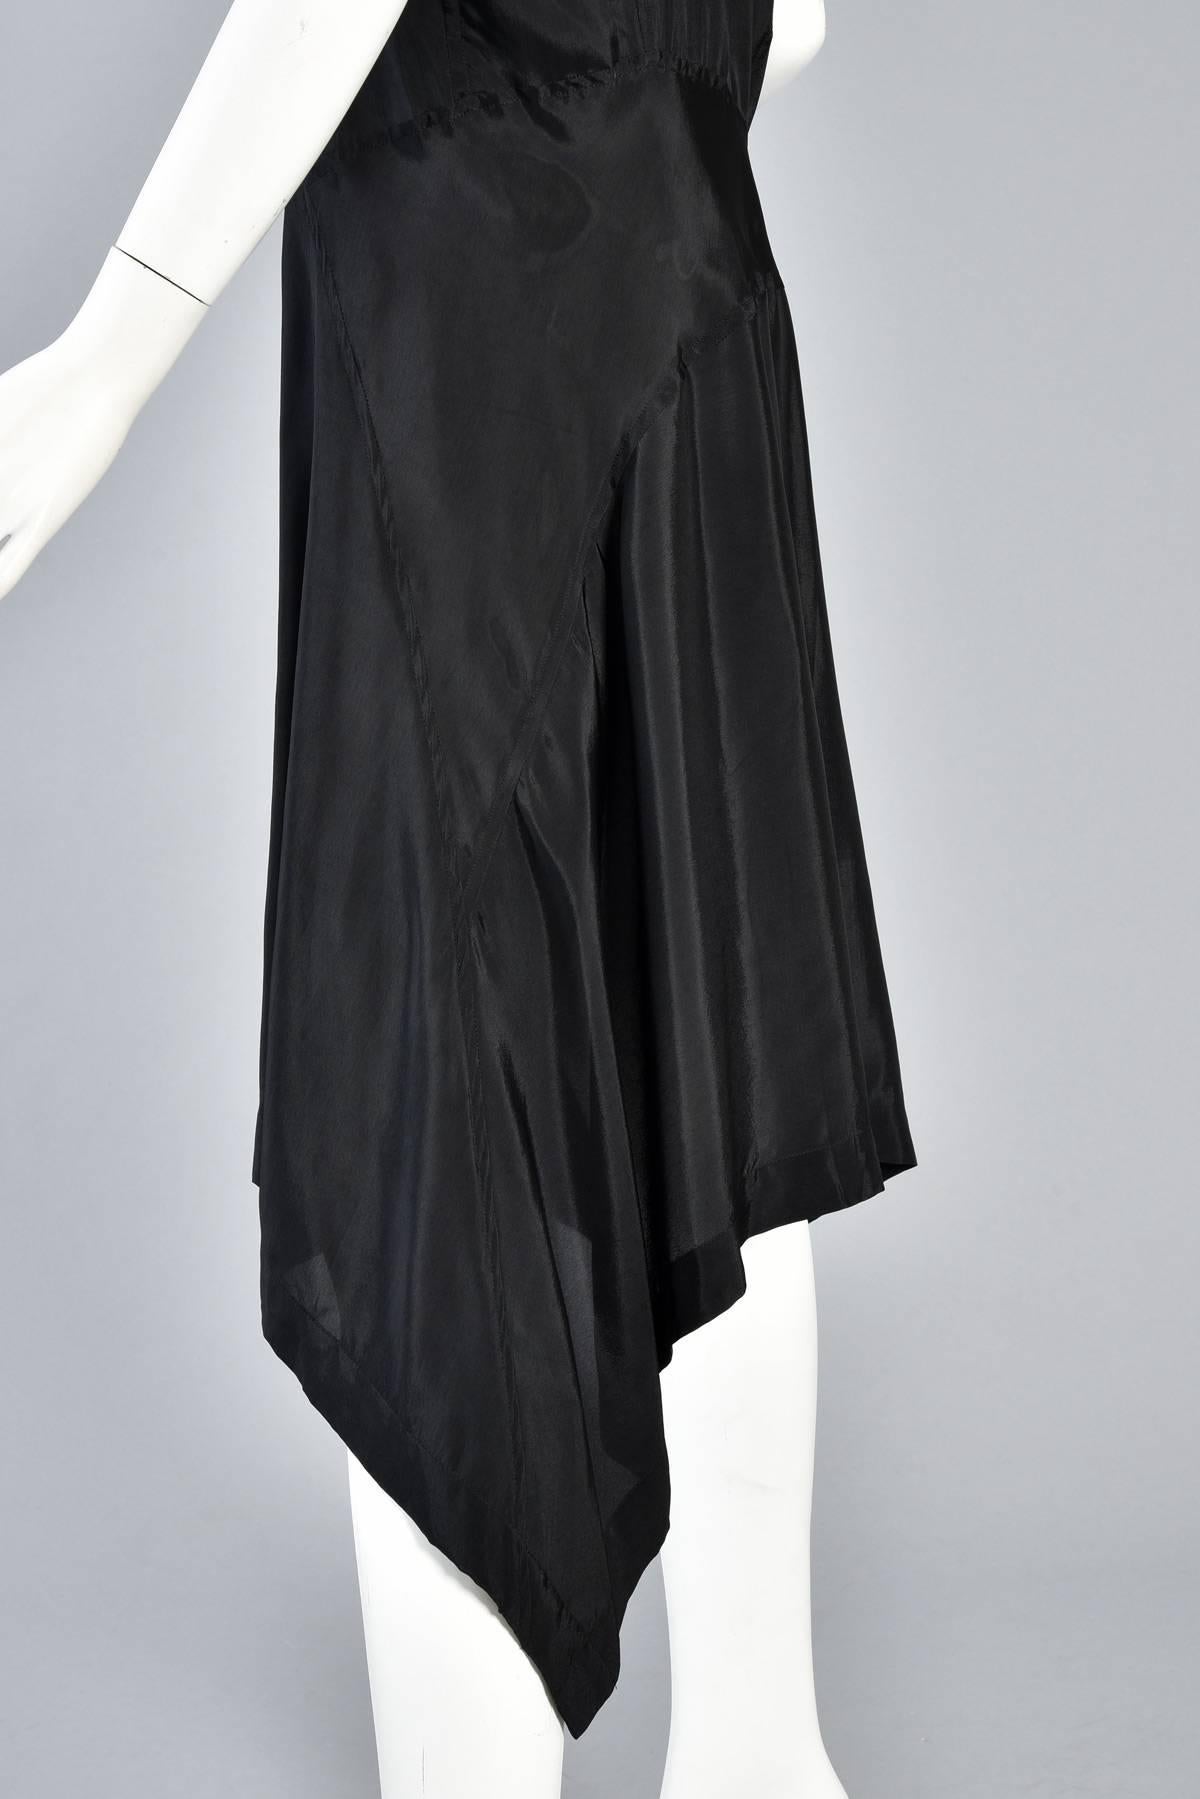 Comme des Garcons Asymmetrical Minimal Black Dress For Sale 2